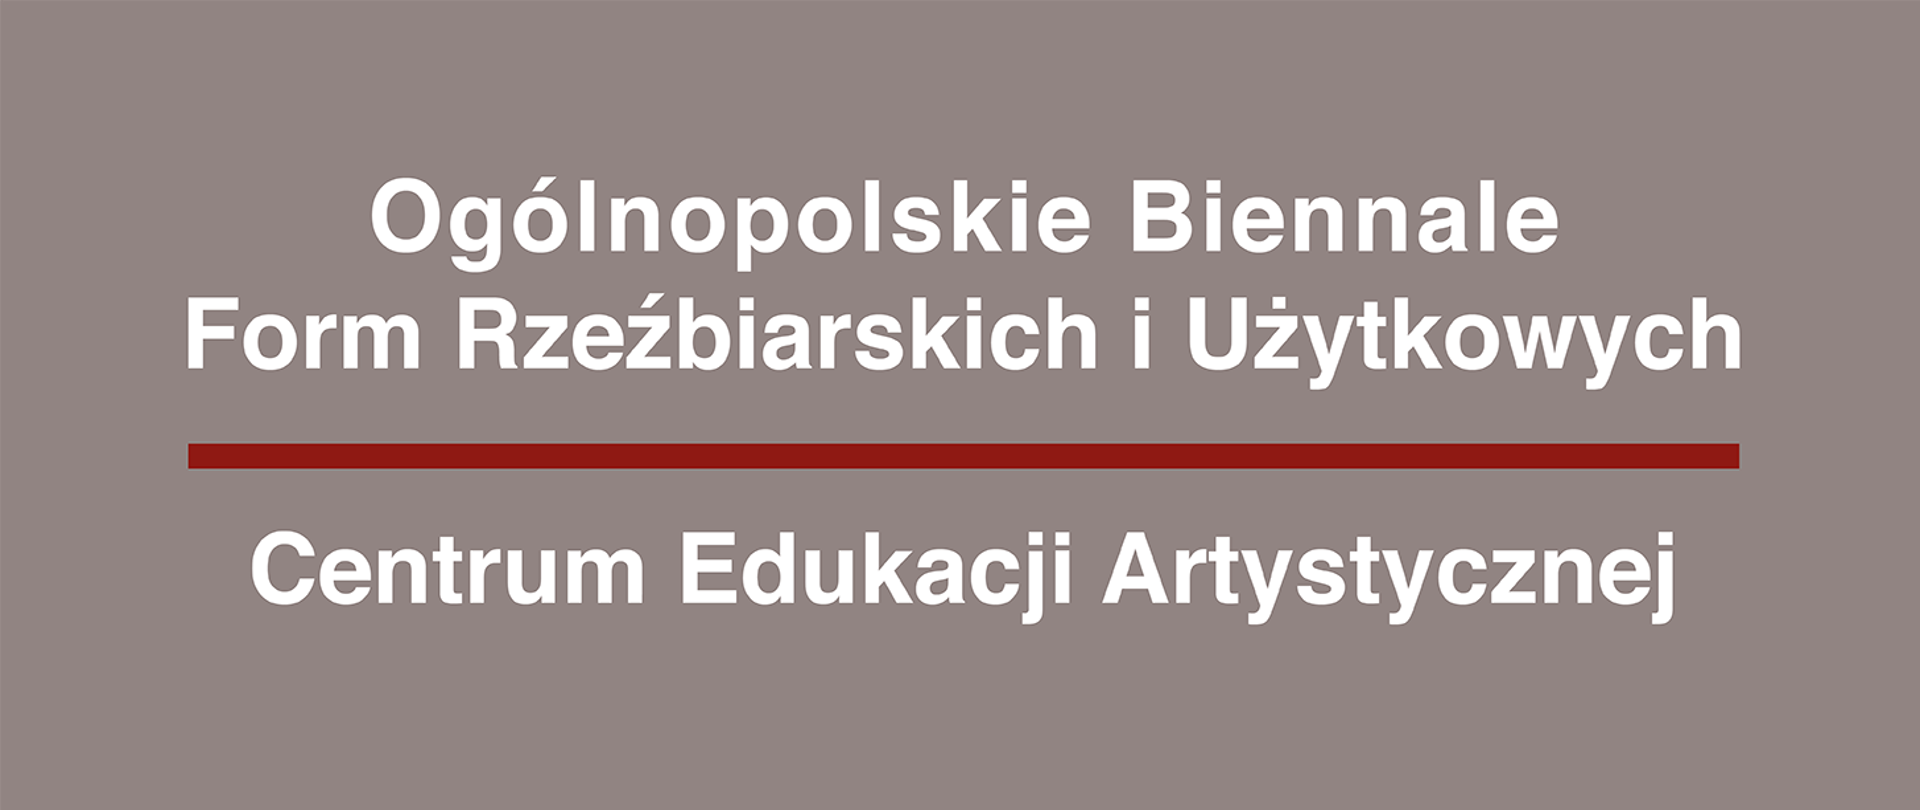 Ciemno szaroczerwone tło z napisem "Ogólnopolskie Biennale Form Rzeźbiarskich i Użytkowych" przedzielonym bordową kreską i tekstem po kreską "Centrum Edukacji Artystycznej"